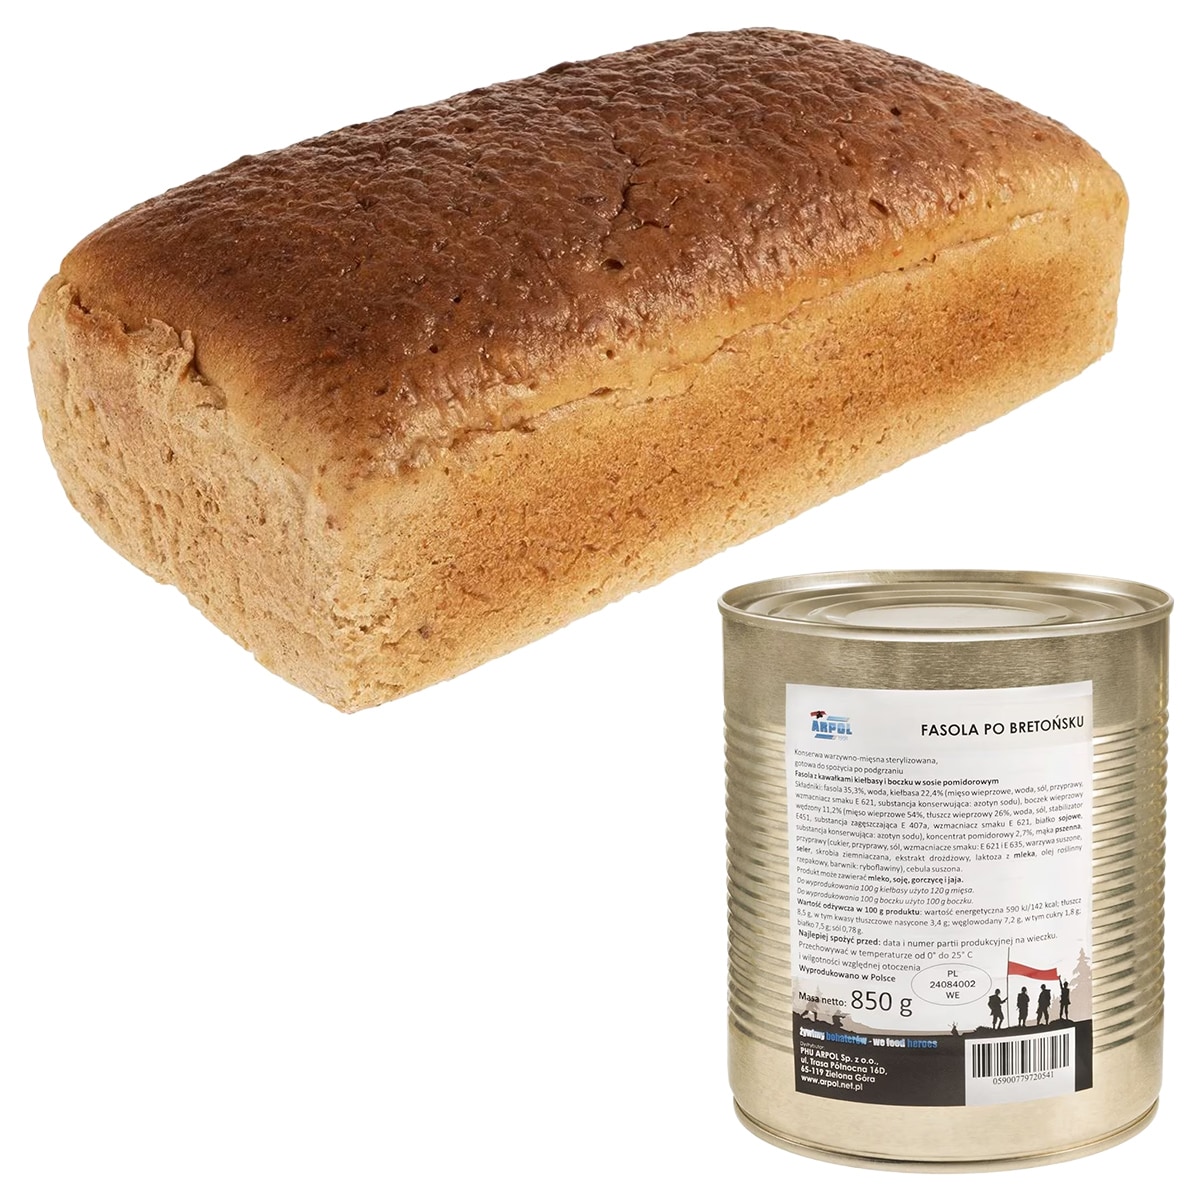 Питльований хліб 700 г + квасоля по-бретонськи Arpol 850 г - набір